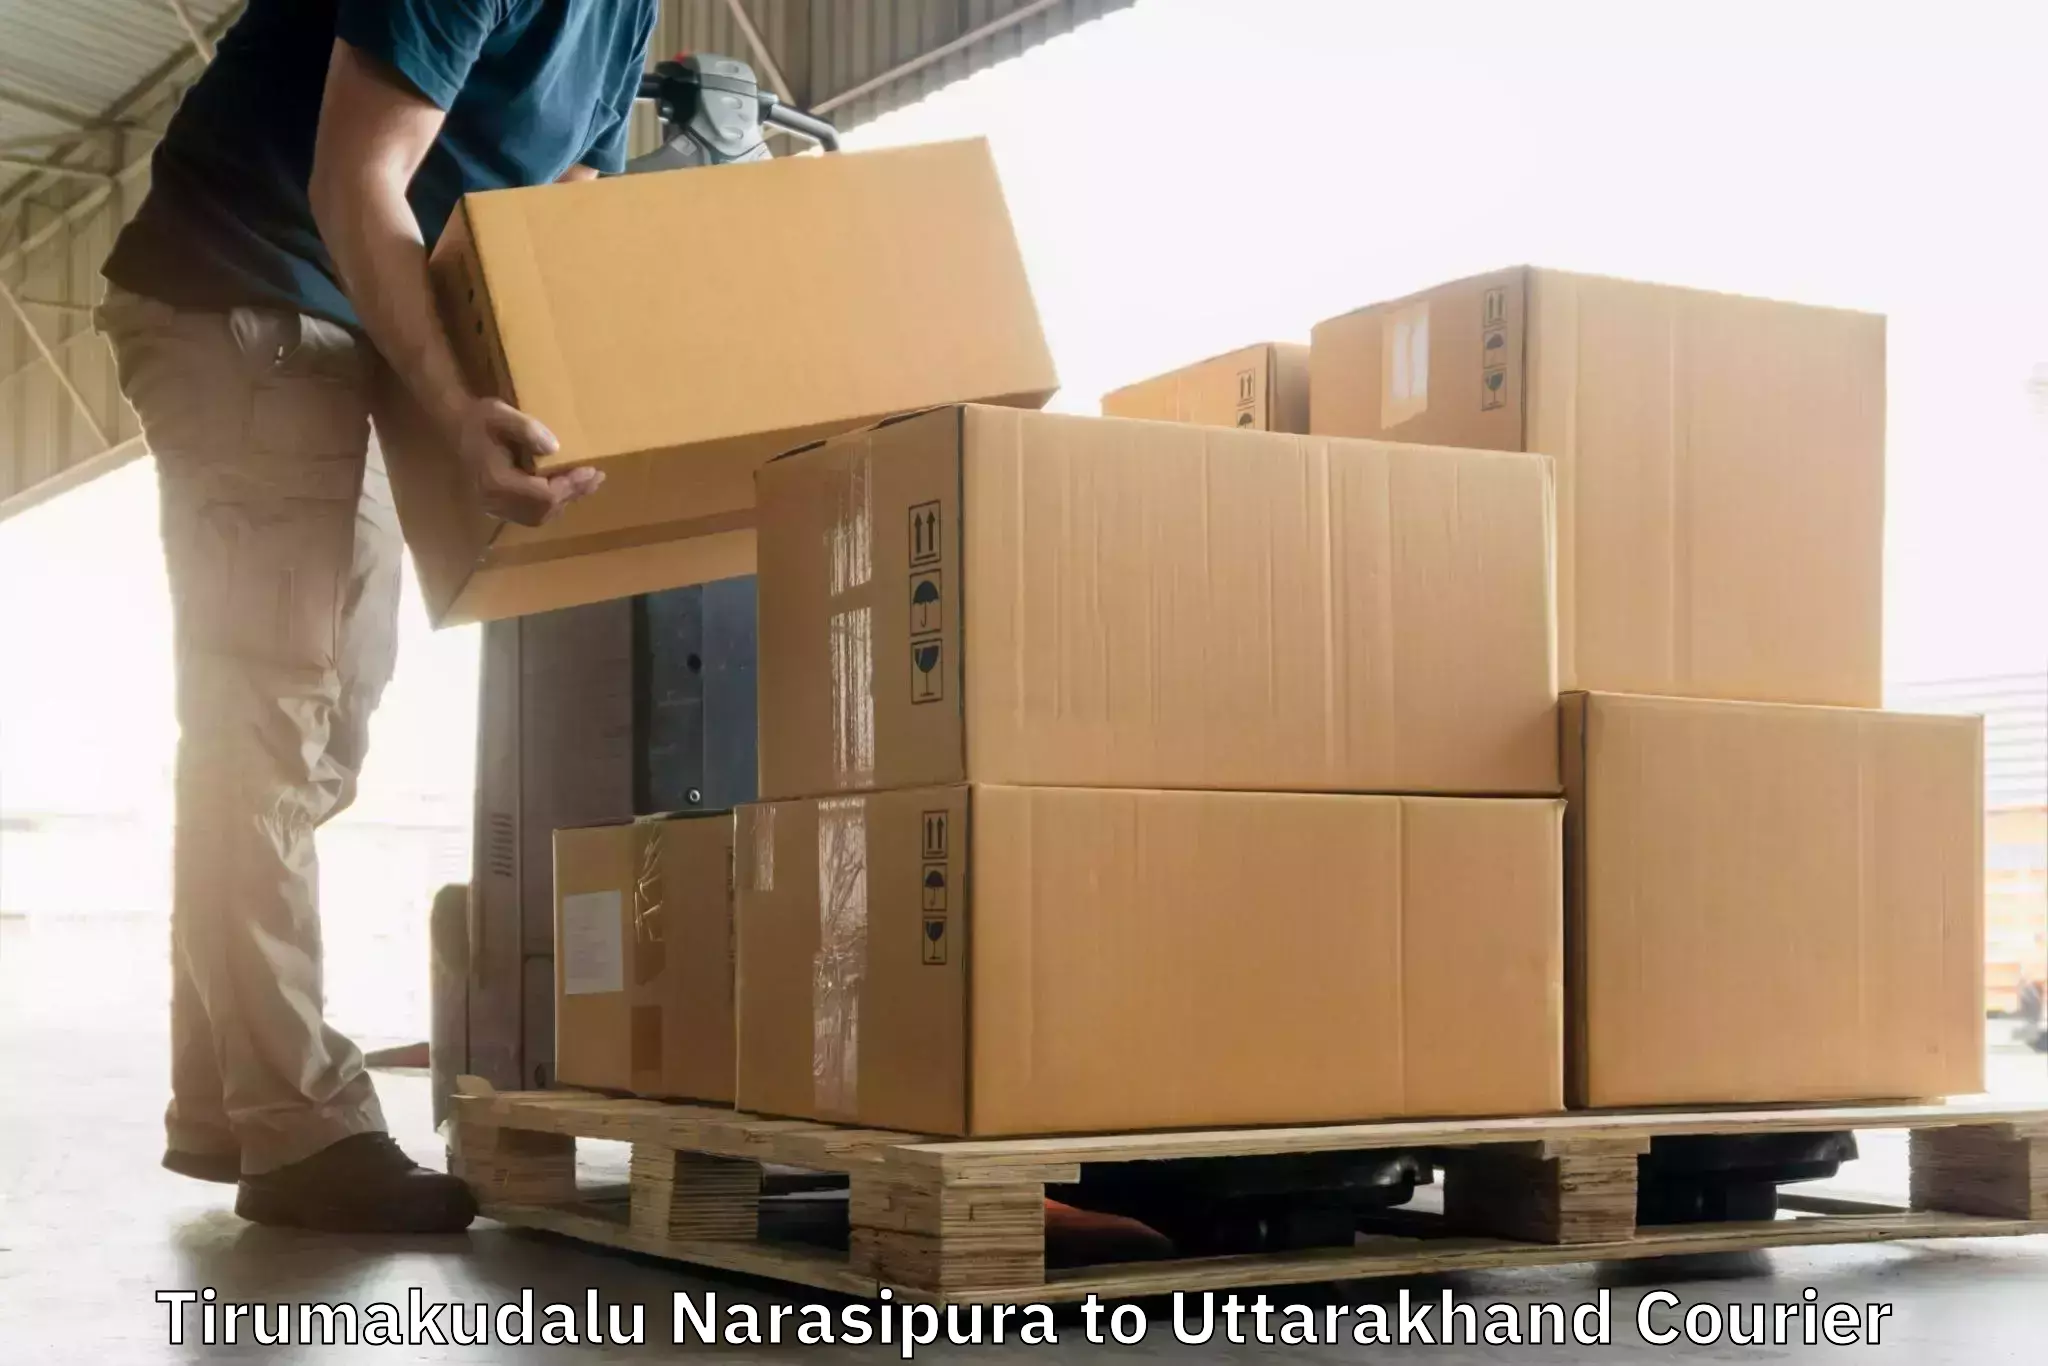 Special handling courier Tirumakudalu Narasipura to Tehri